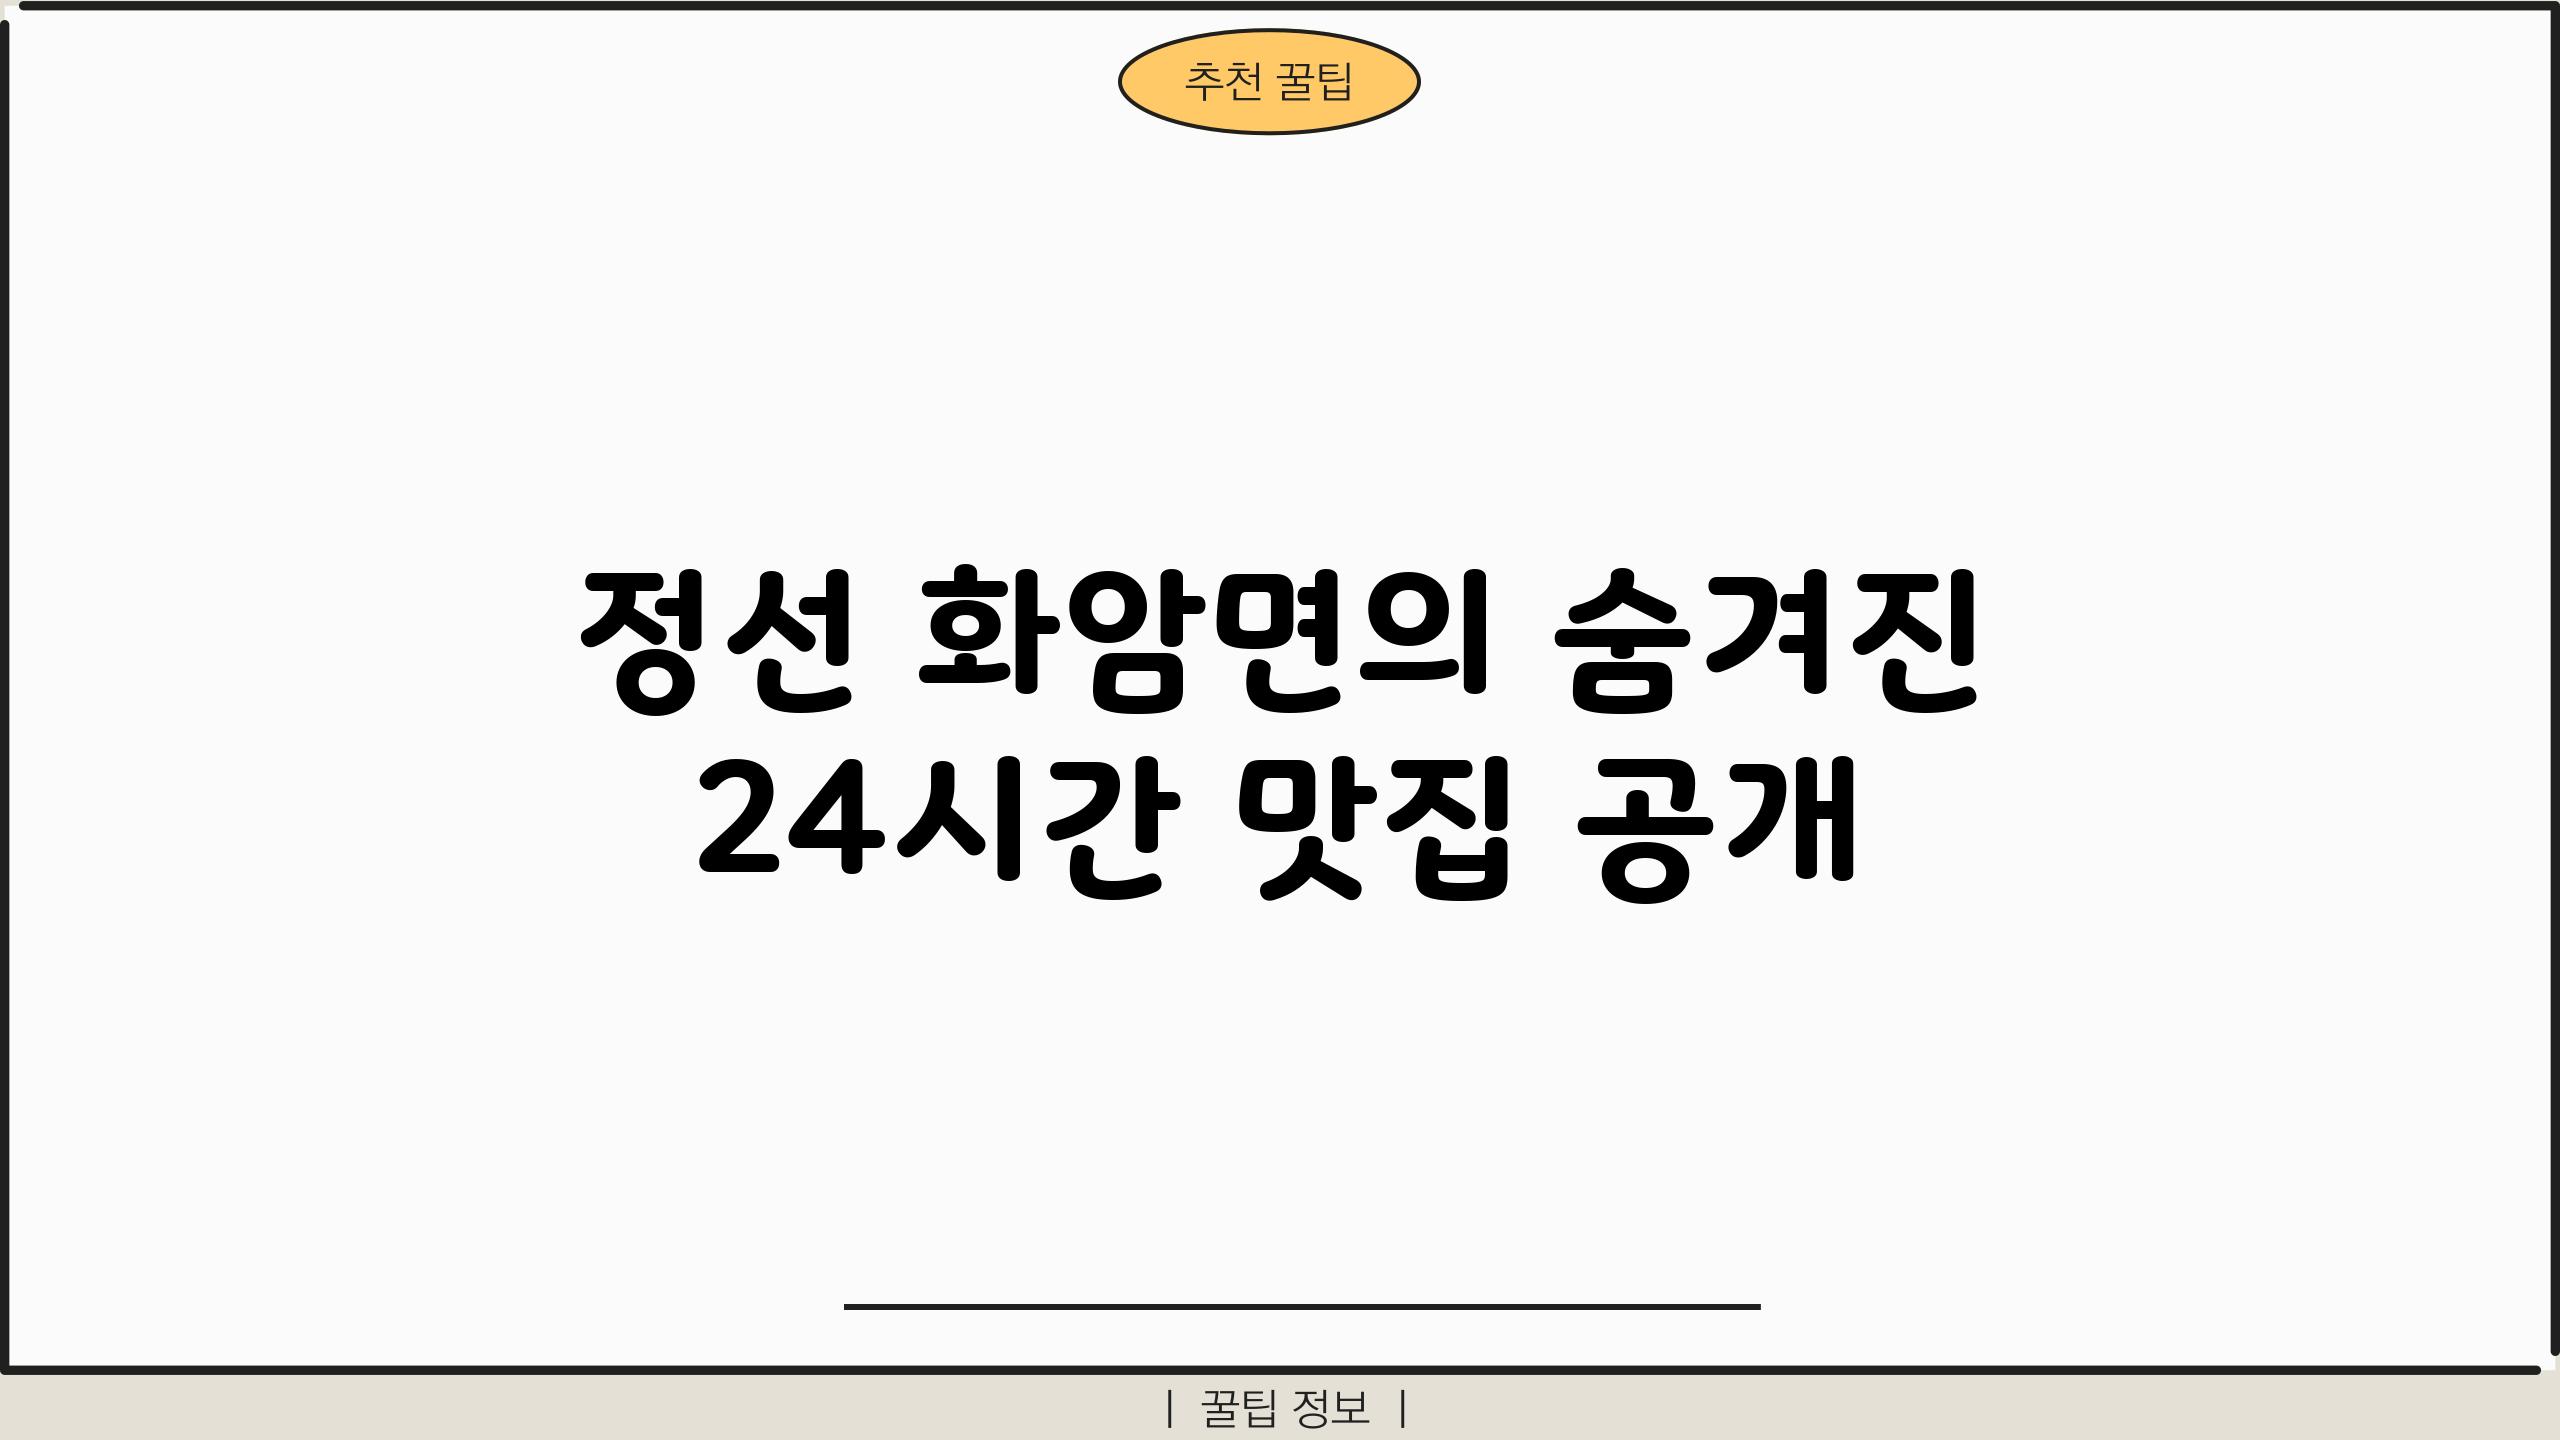 정선 화암면의 숨겨진 24시간 맛집 공개